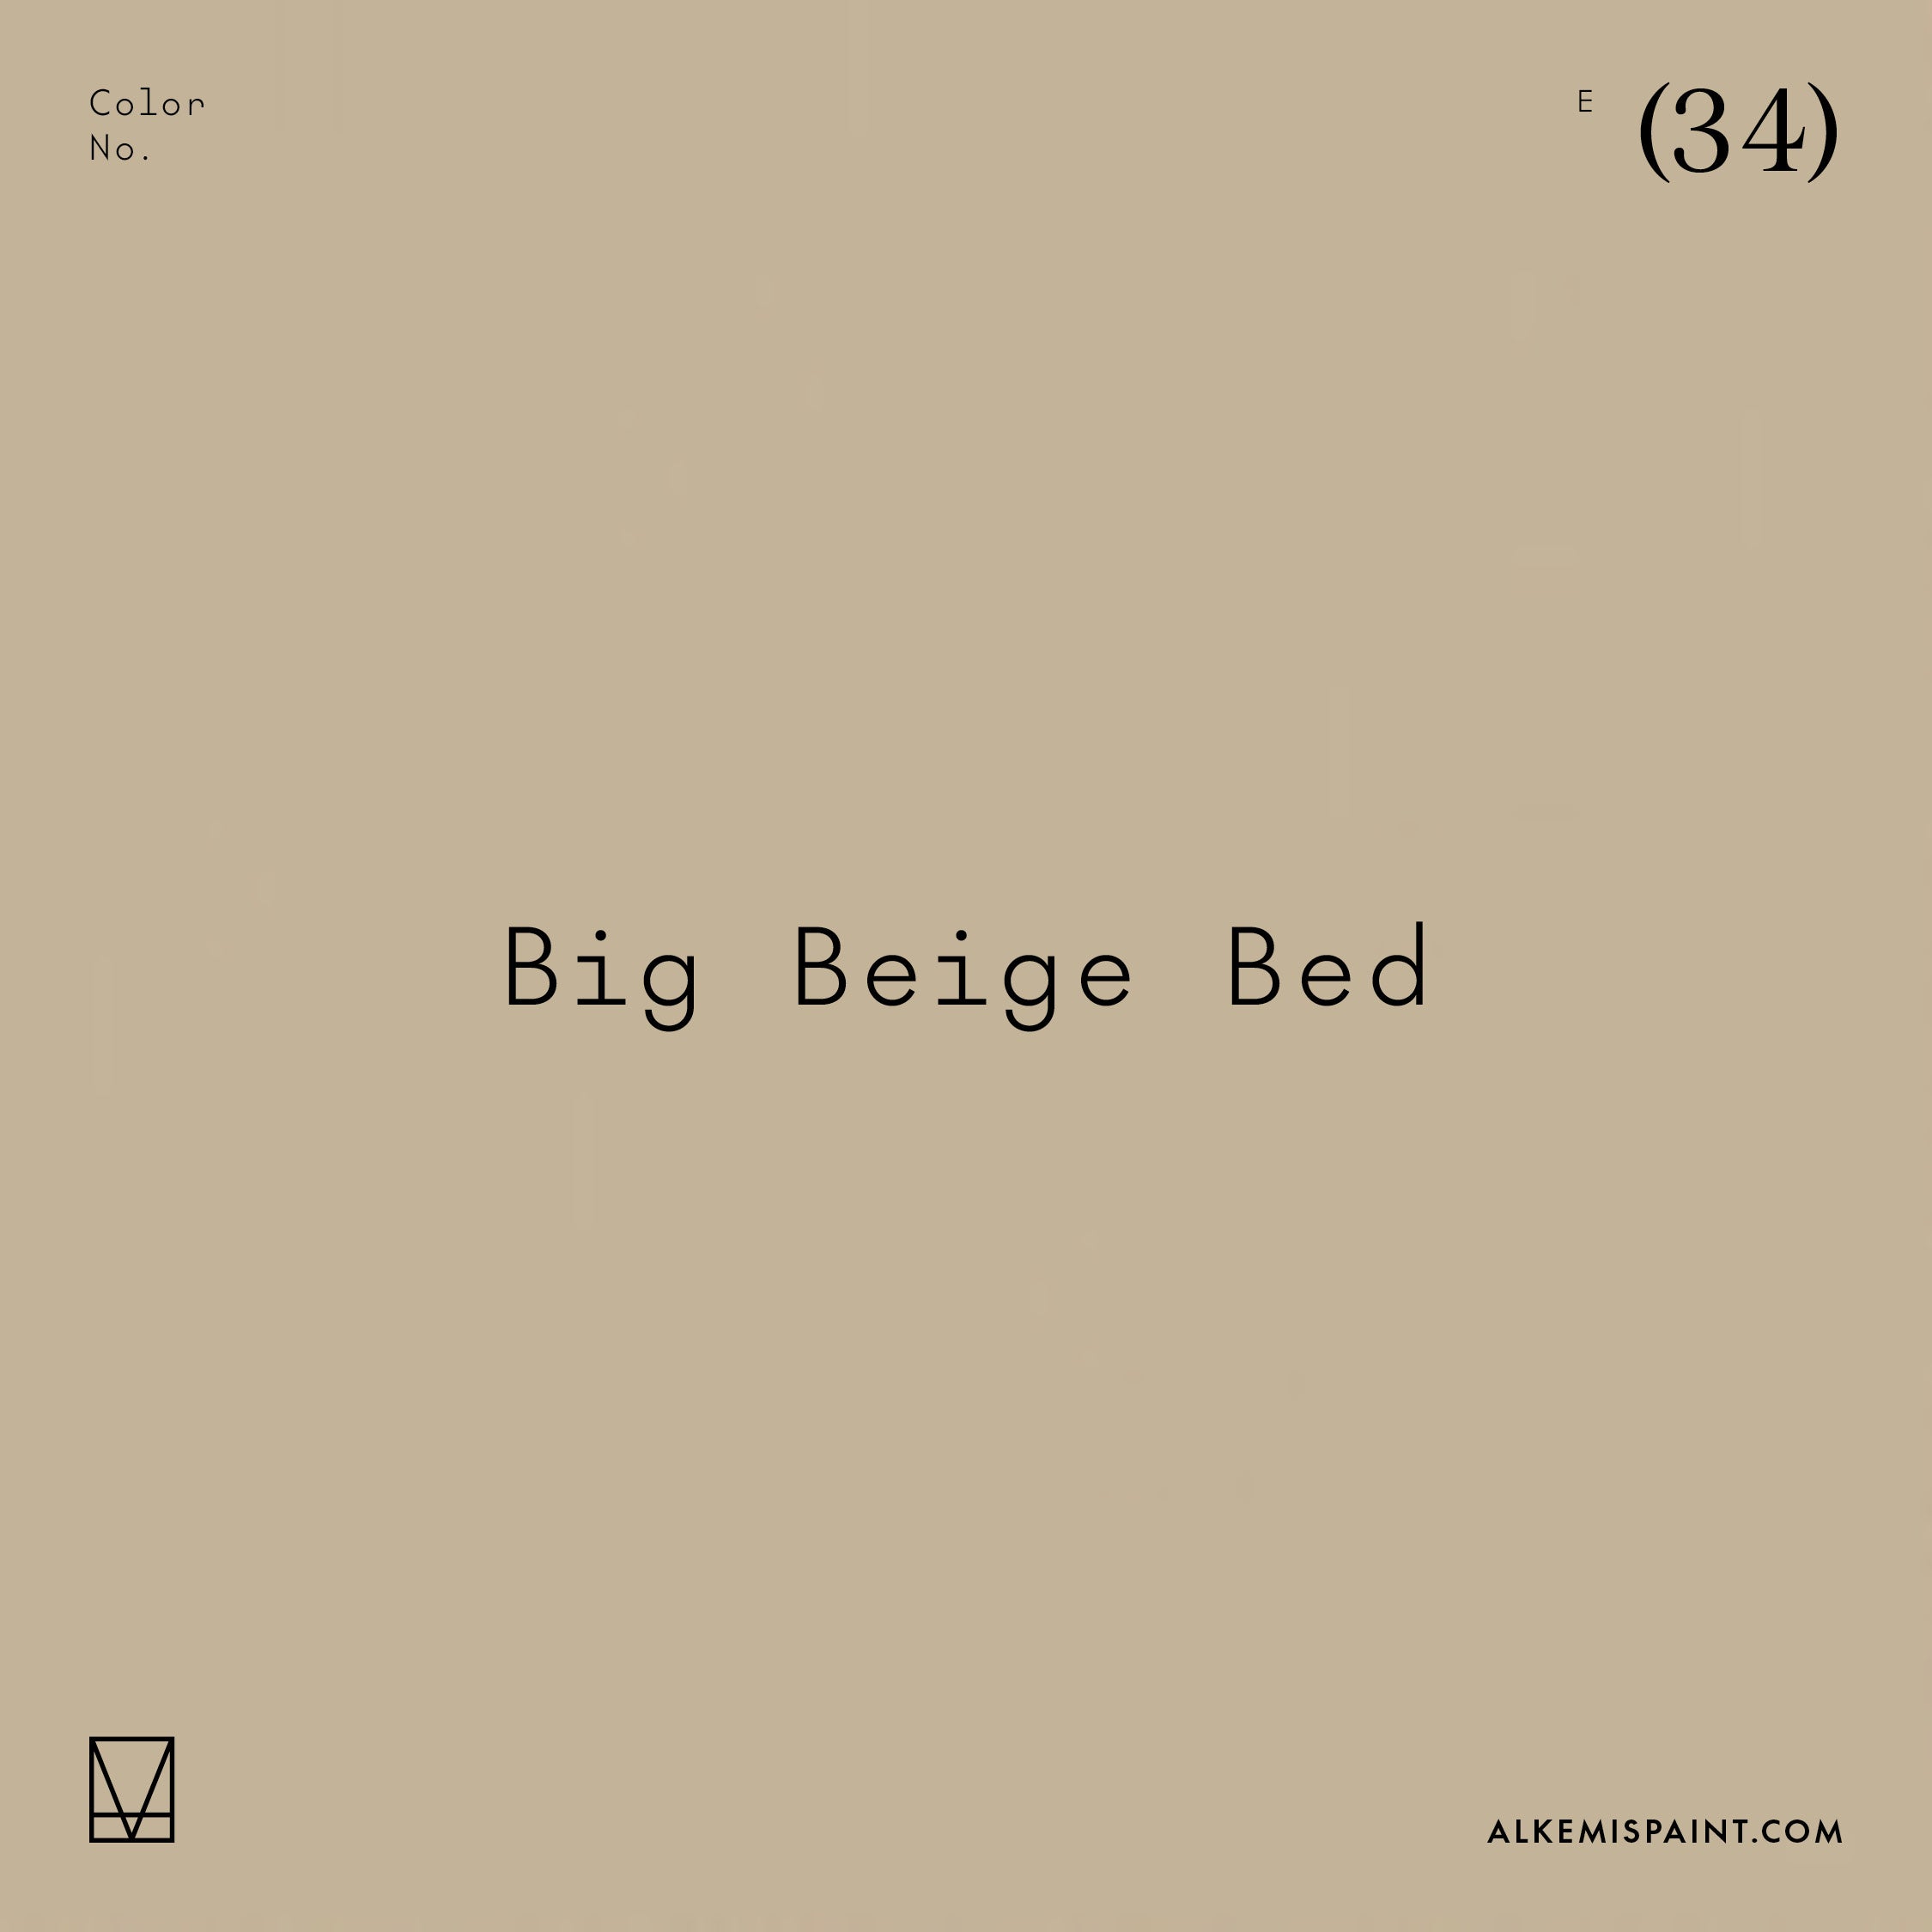 Big Beige Bed (34)